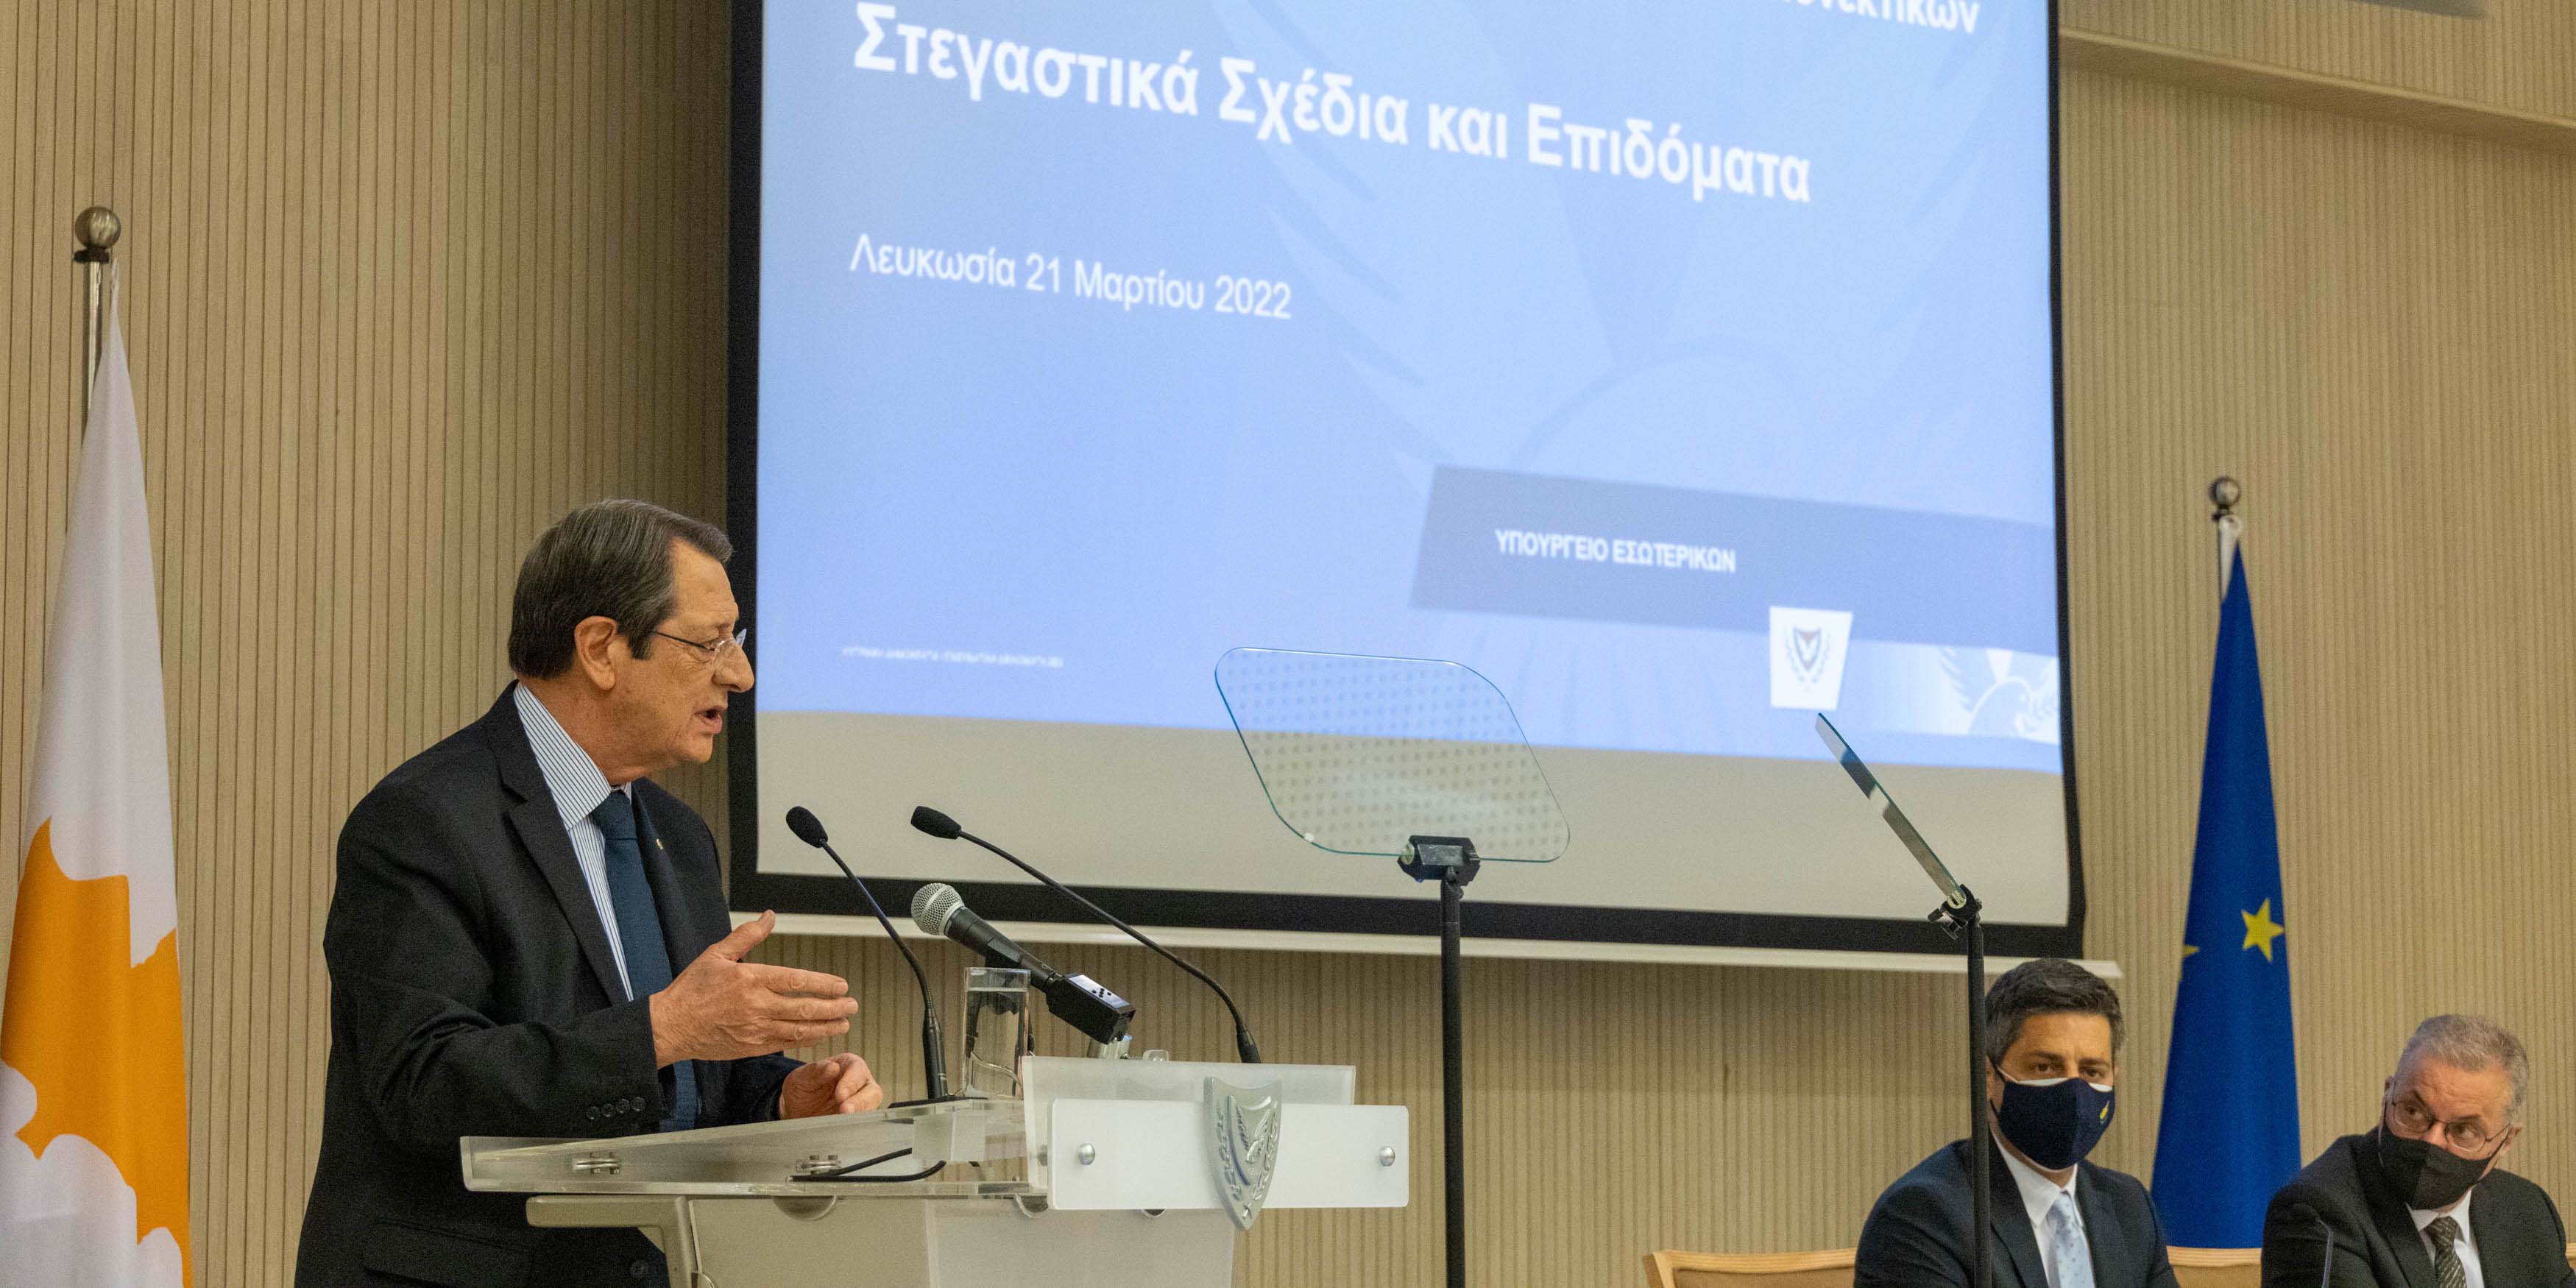 Πρόεδρος Αναστασιάδης: Οι δράσεις που θα ολοκληρωθούν μέχρι το τέλος του 2022 